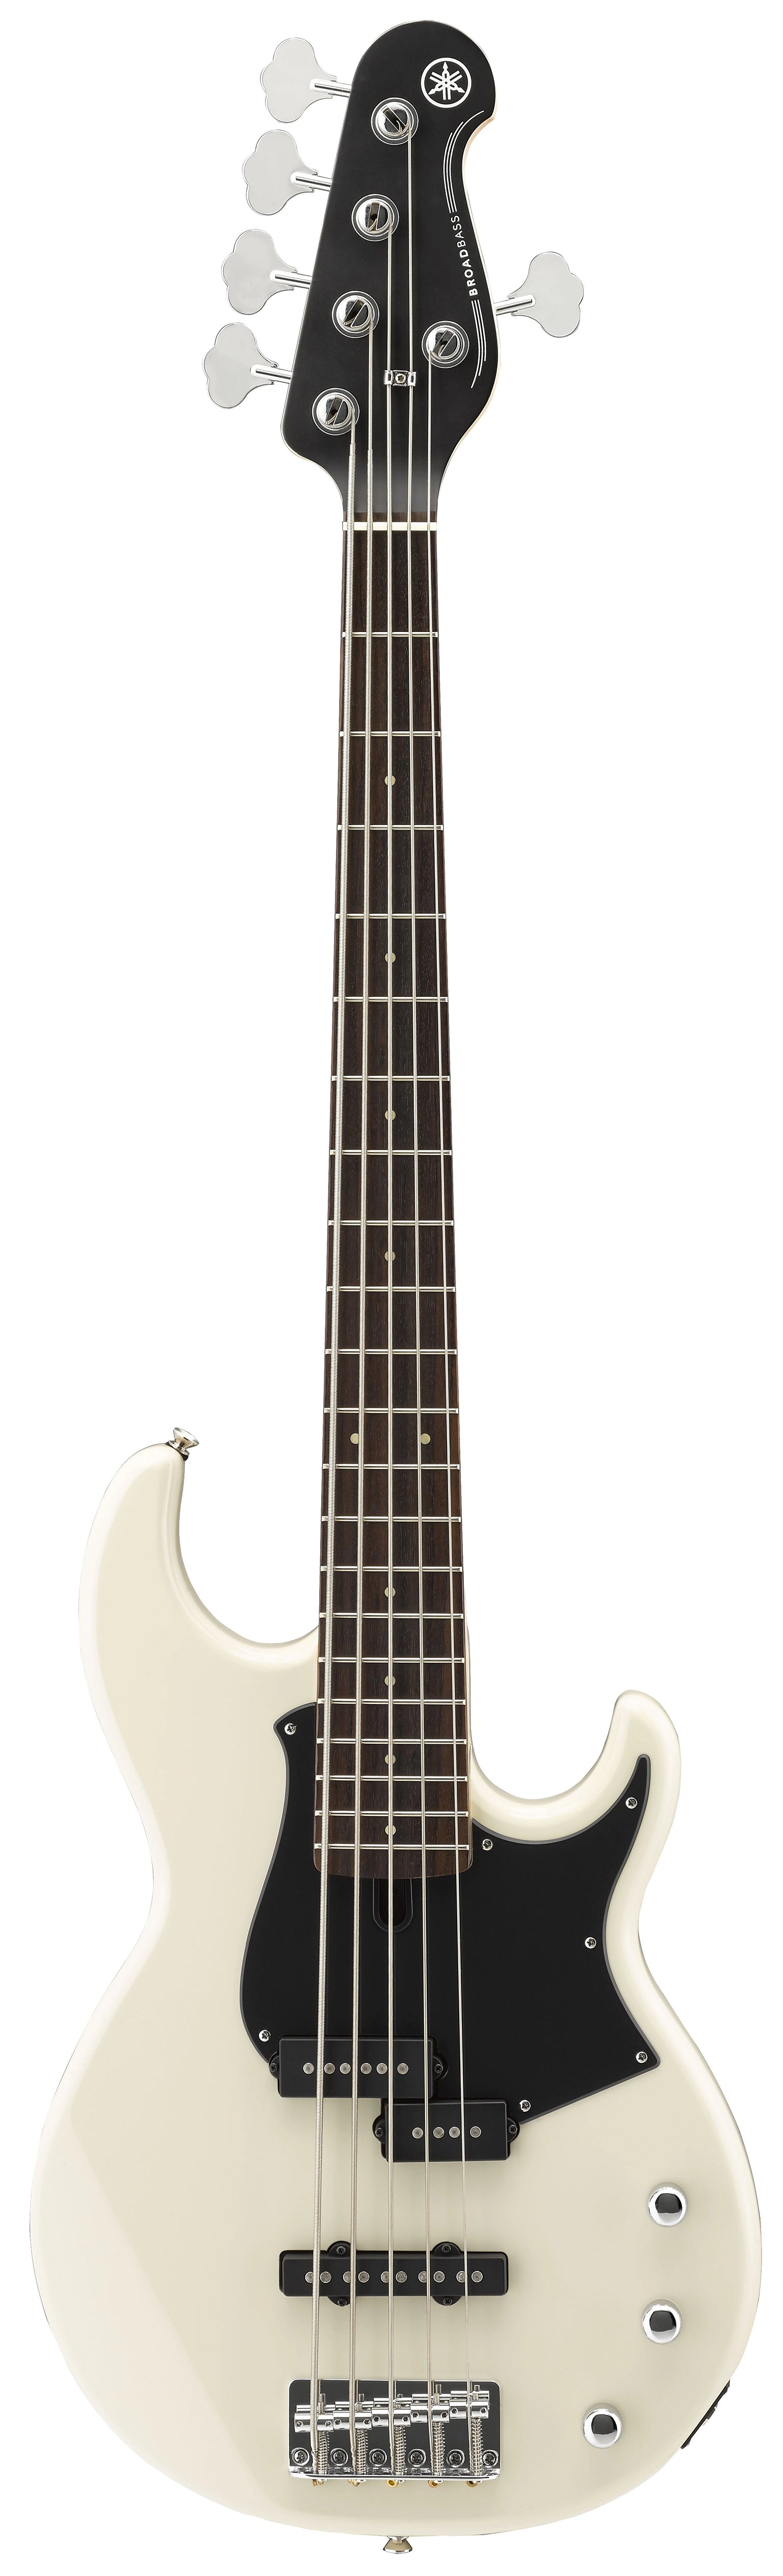 Yamaha Bb235 5-String Electric Bass Guitar